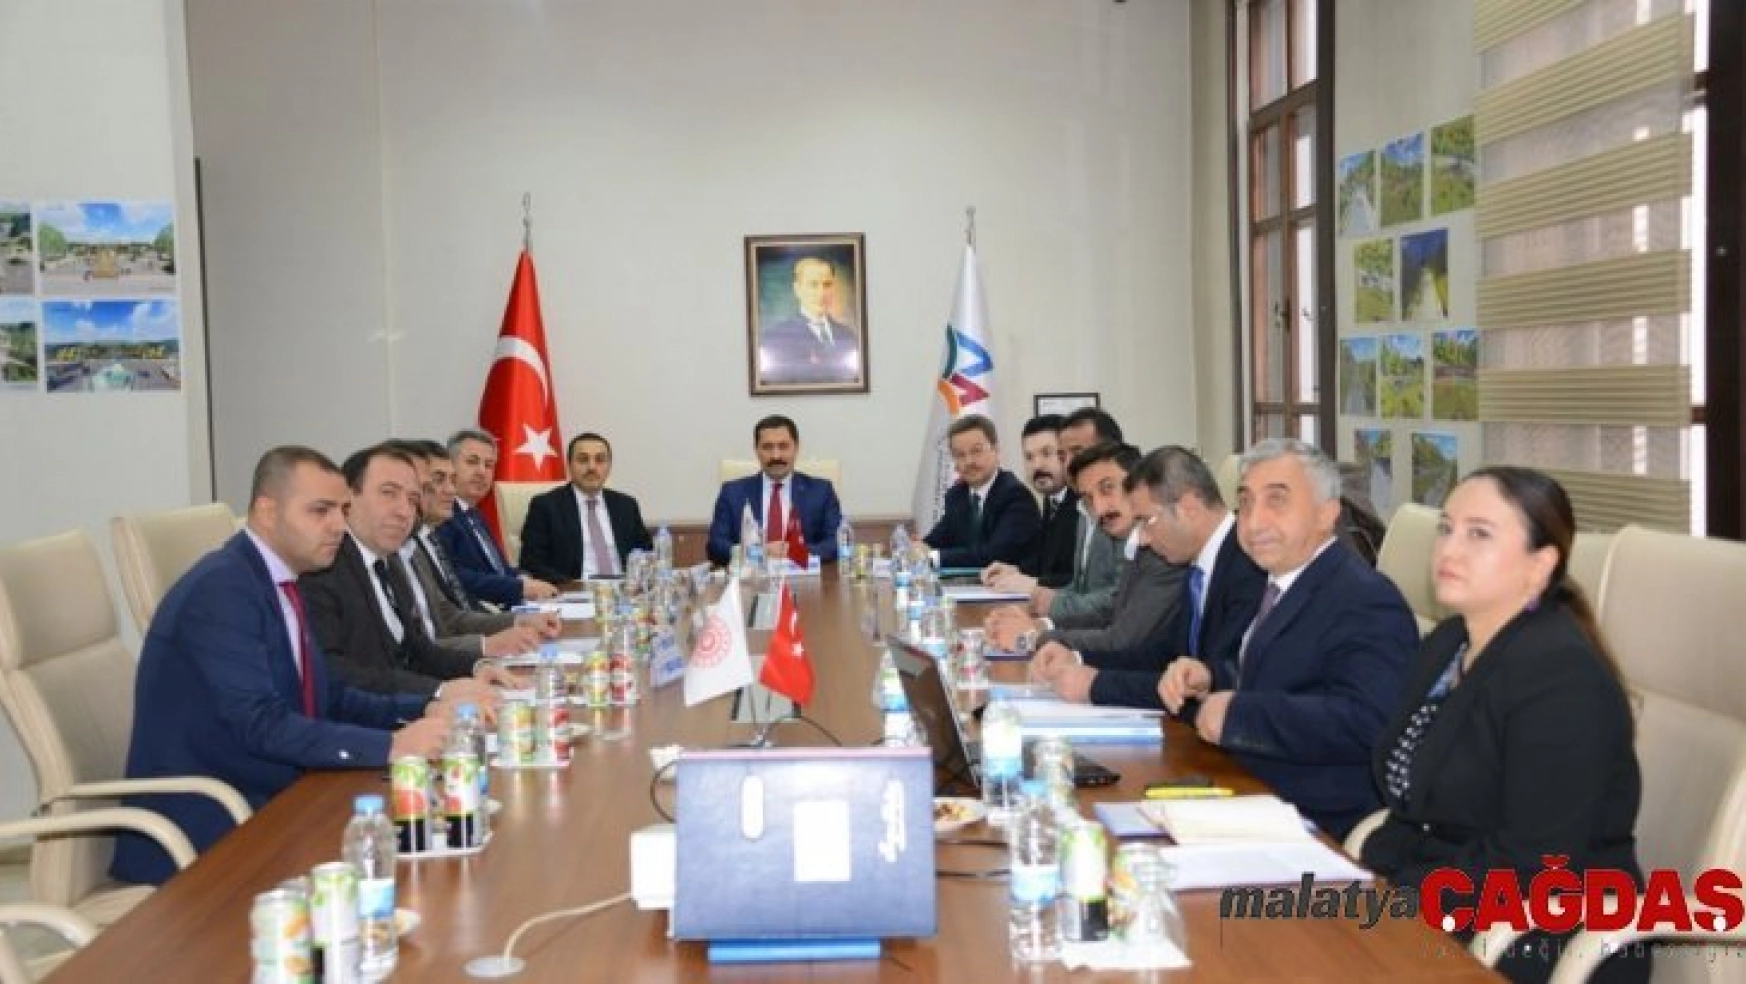 Vali Mustafa Masatlı Başkanlığında SERKA 69'ncu yönetim kurulu toplantısı yapıldı